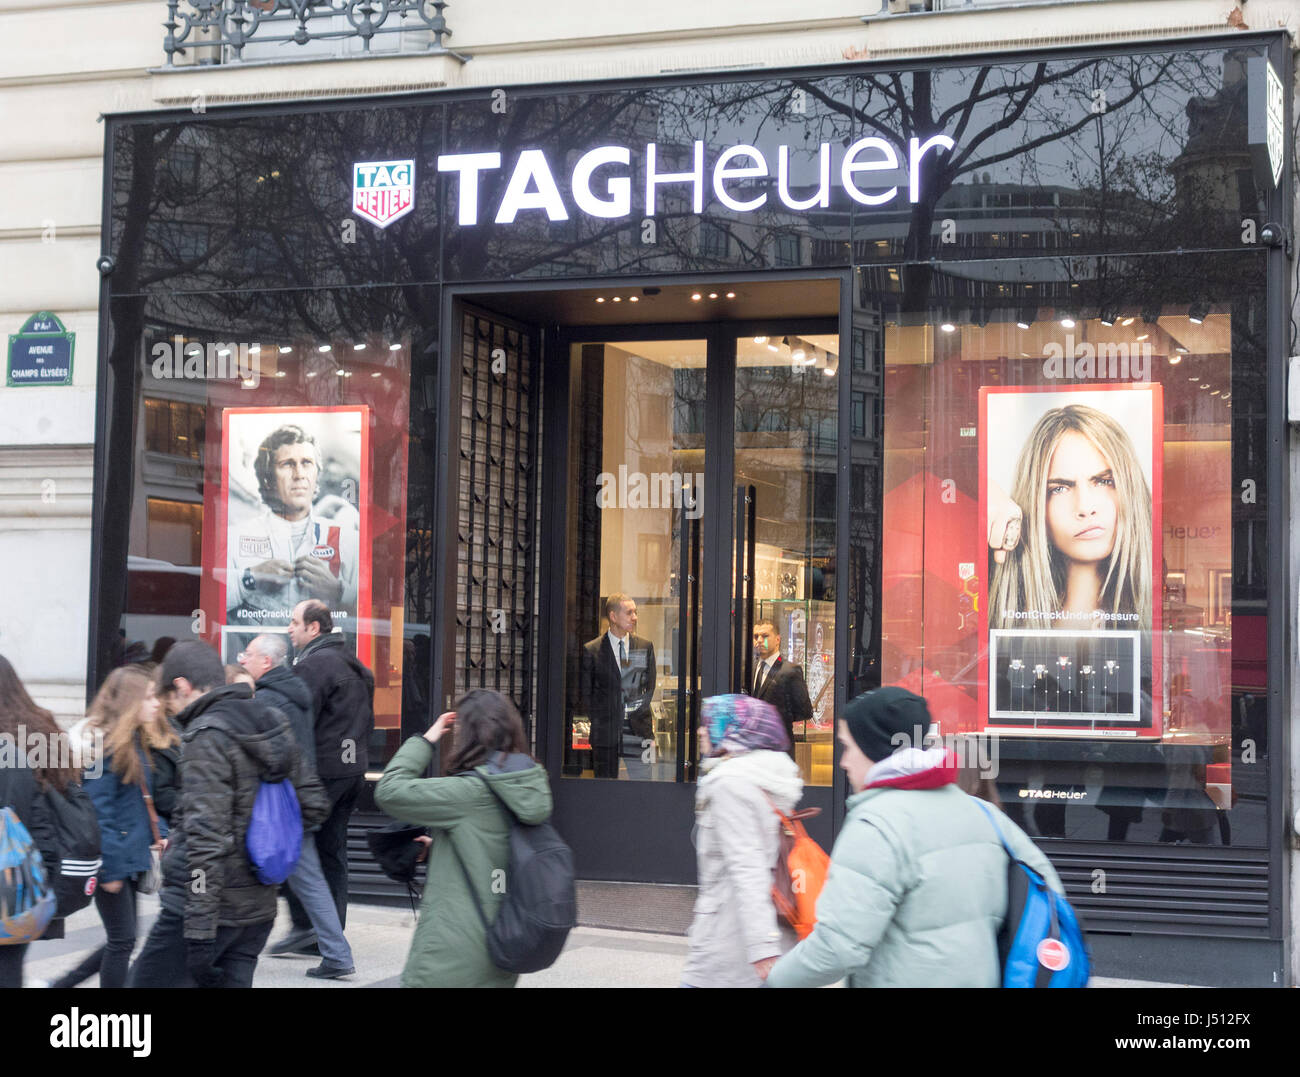 Tag Heuer luxury watch shop, Champs-Elysées, Paris, France. Stock Photo